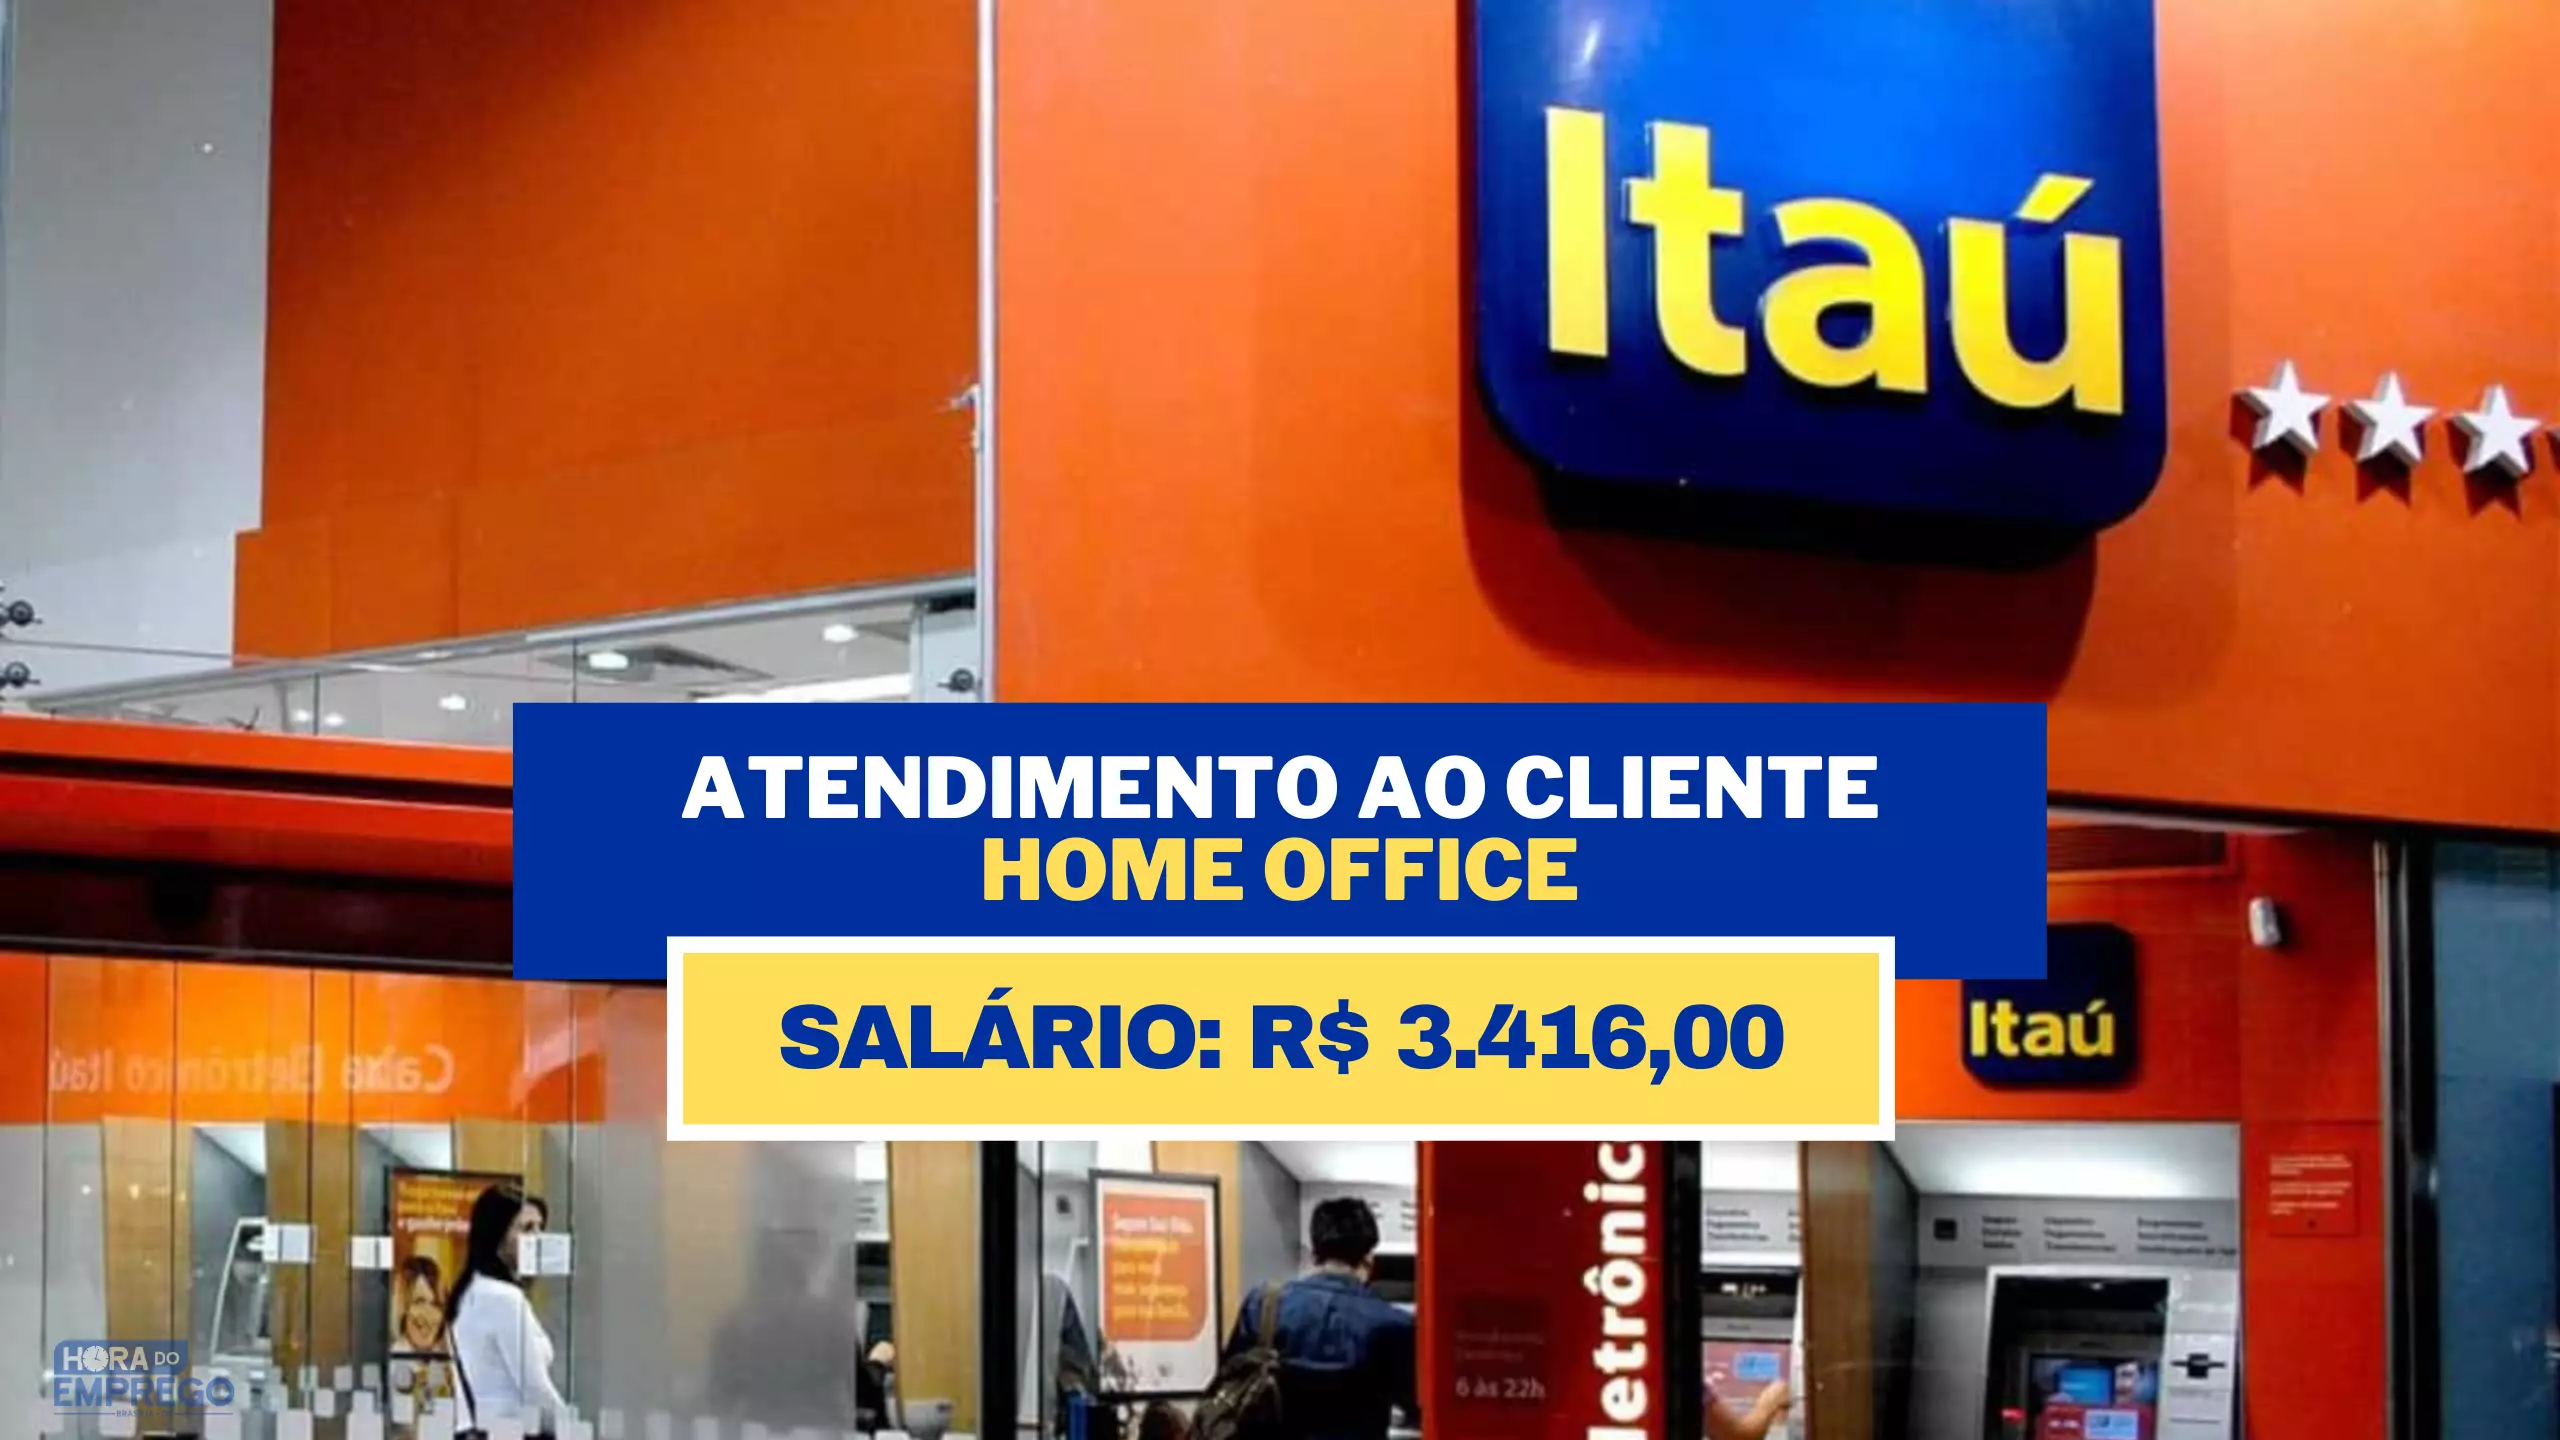 BANCO ITAÚ ANUNCIA VAGAS HOME OFFICE PARA ATENDIMENTO AO CLIENTE COM SALÁRIO DE R$ 3.416,00